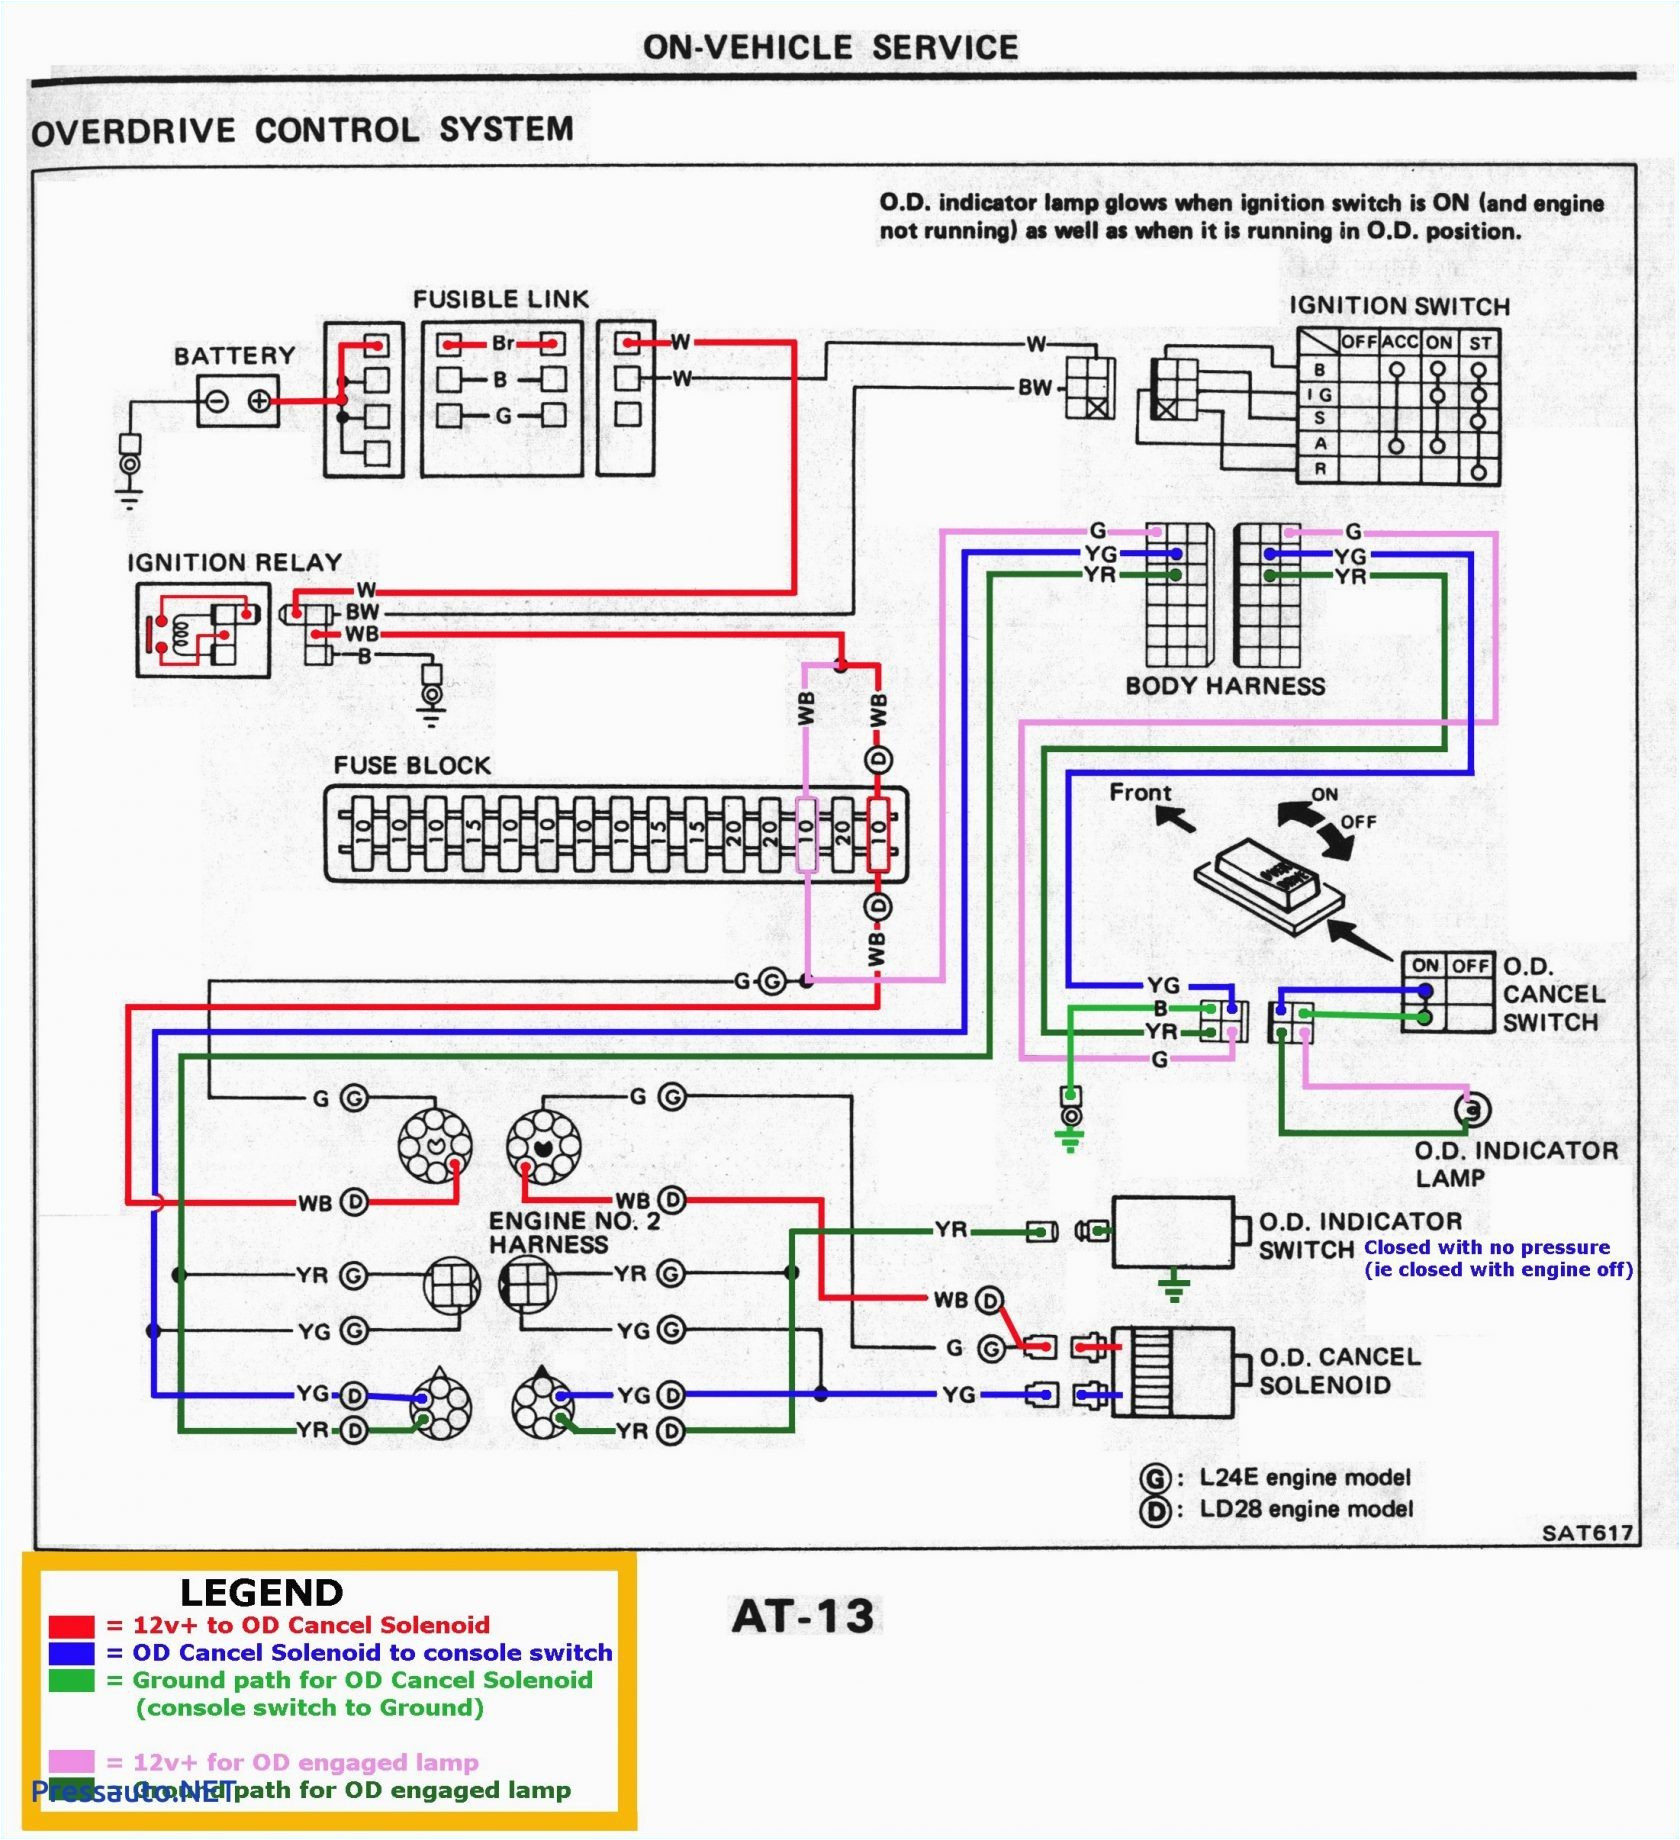 redline chevy 7 pin wiring harness wiring diagrams show redline chevy 7 pin wiring harness